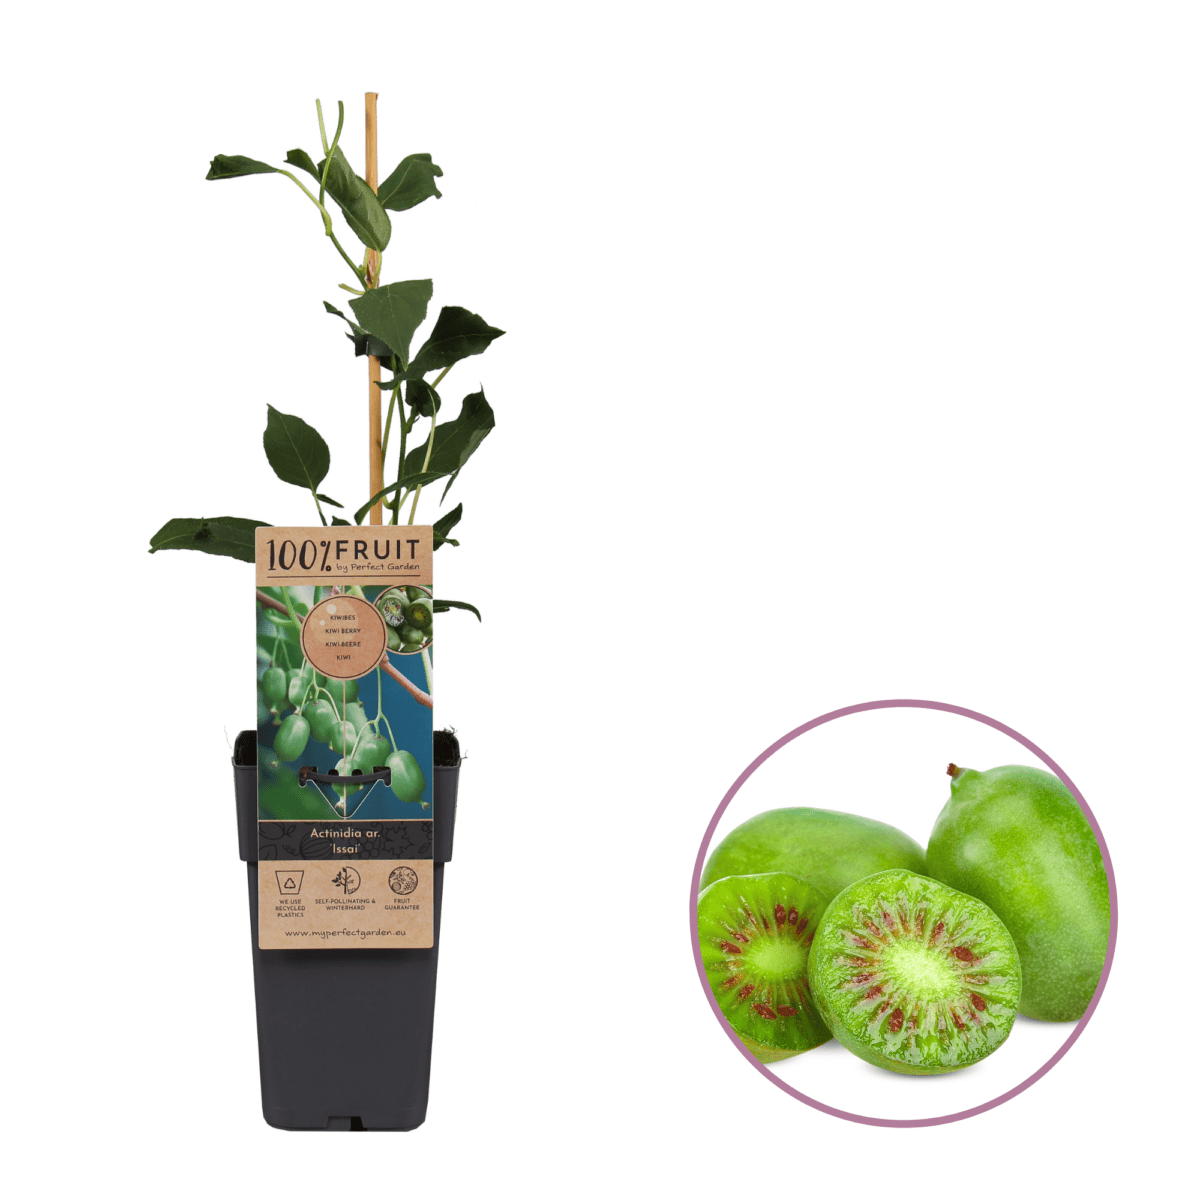 Kiwiplant Actinidia Issai Boskoopse fruitbomen